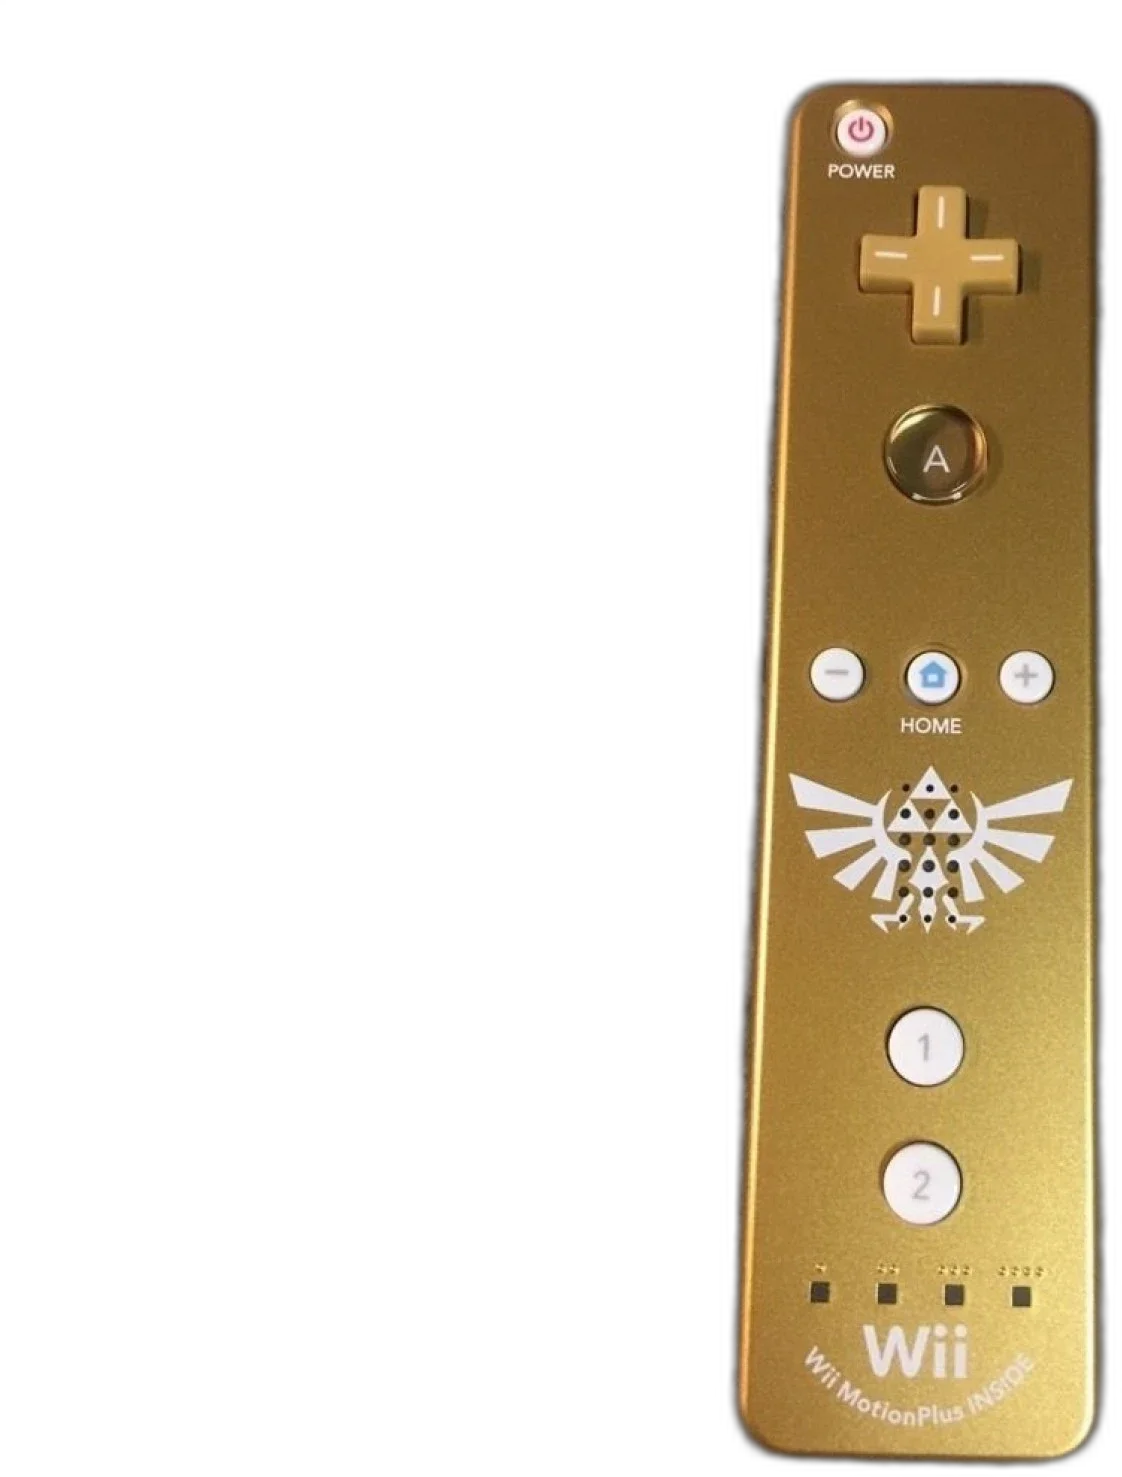  Nintendo Wii-motion Plus Gold Wiimote  [AUS]